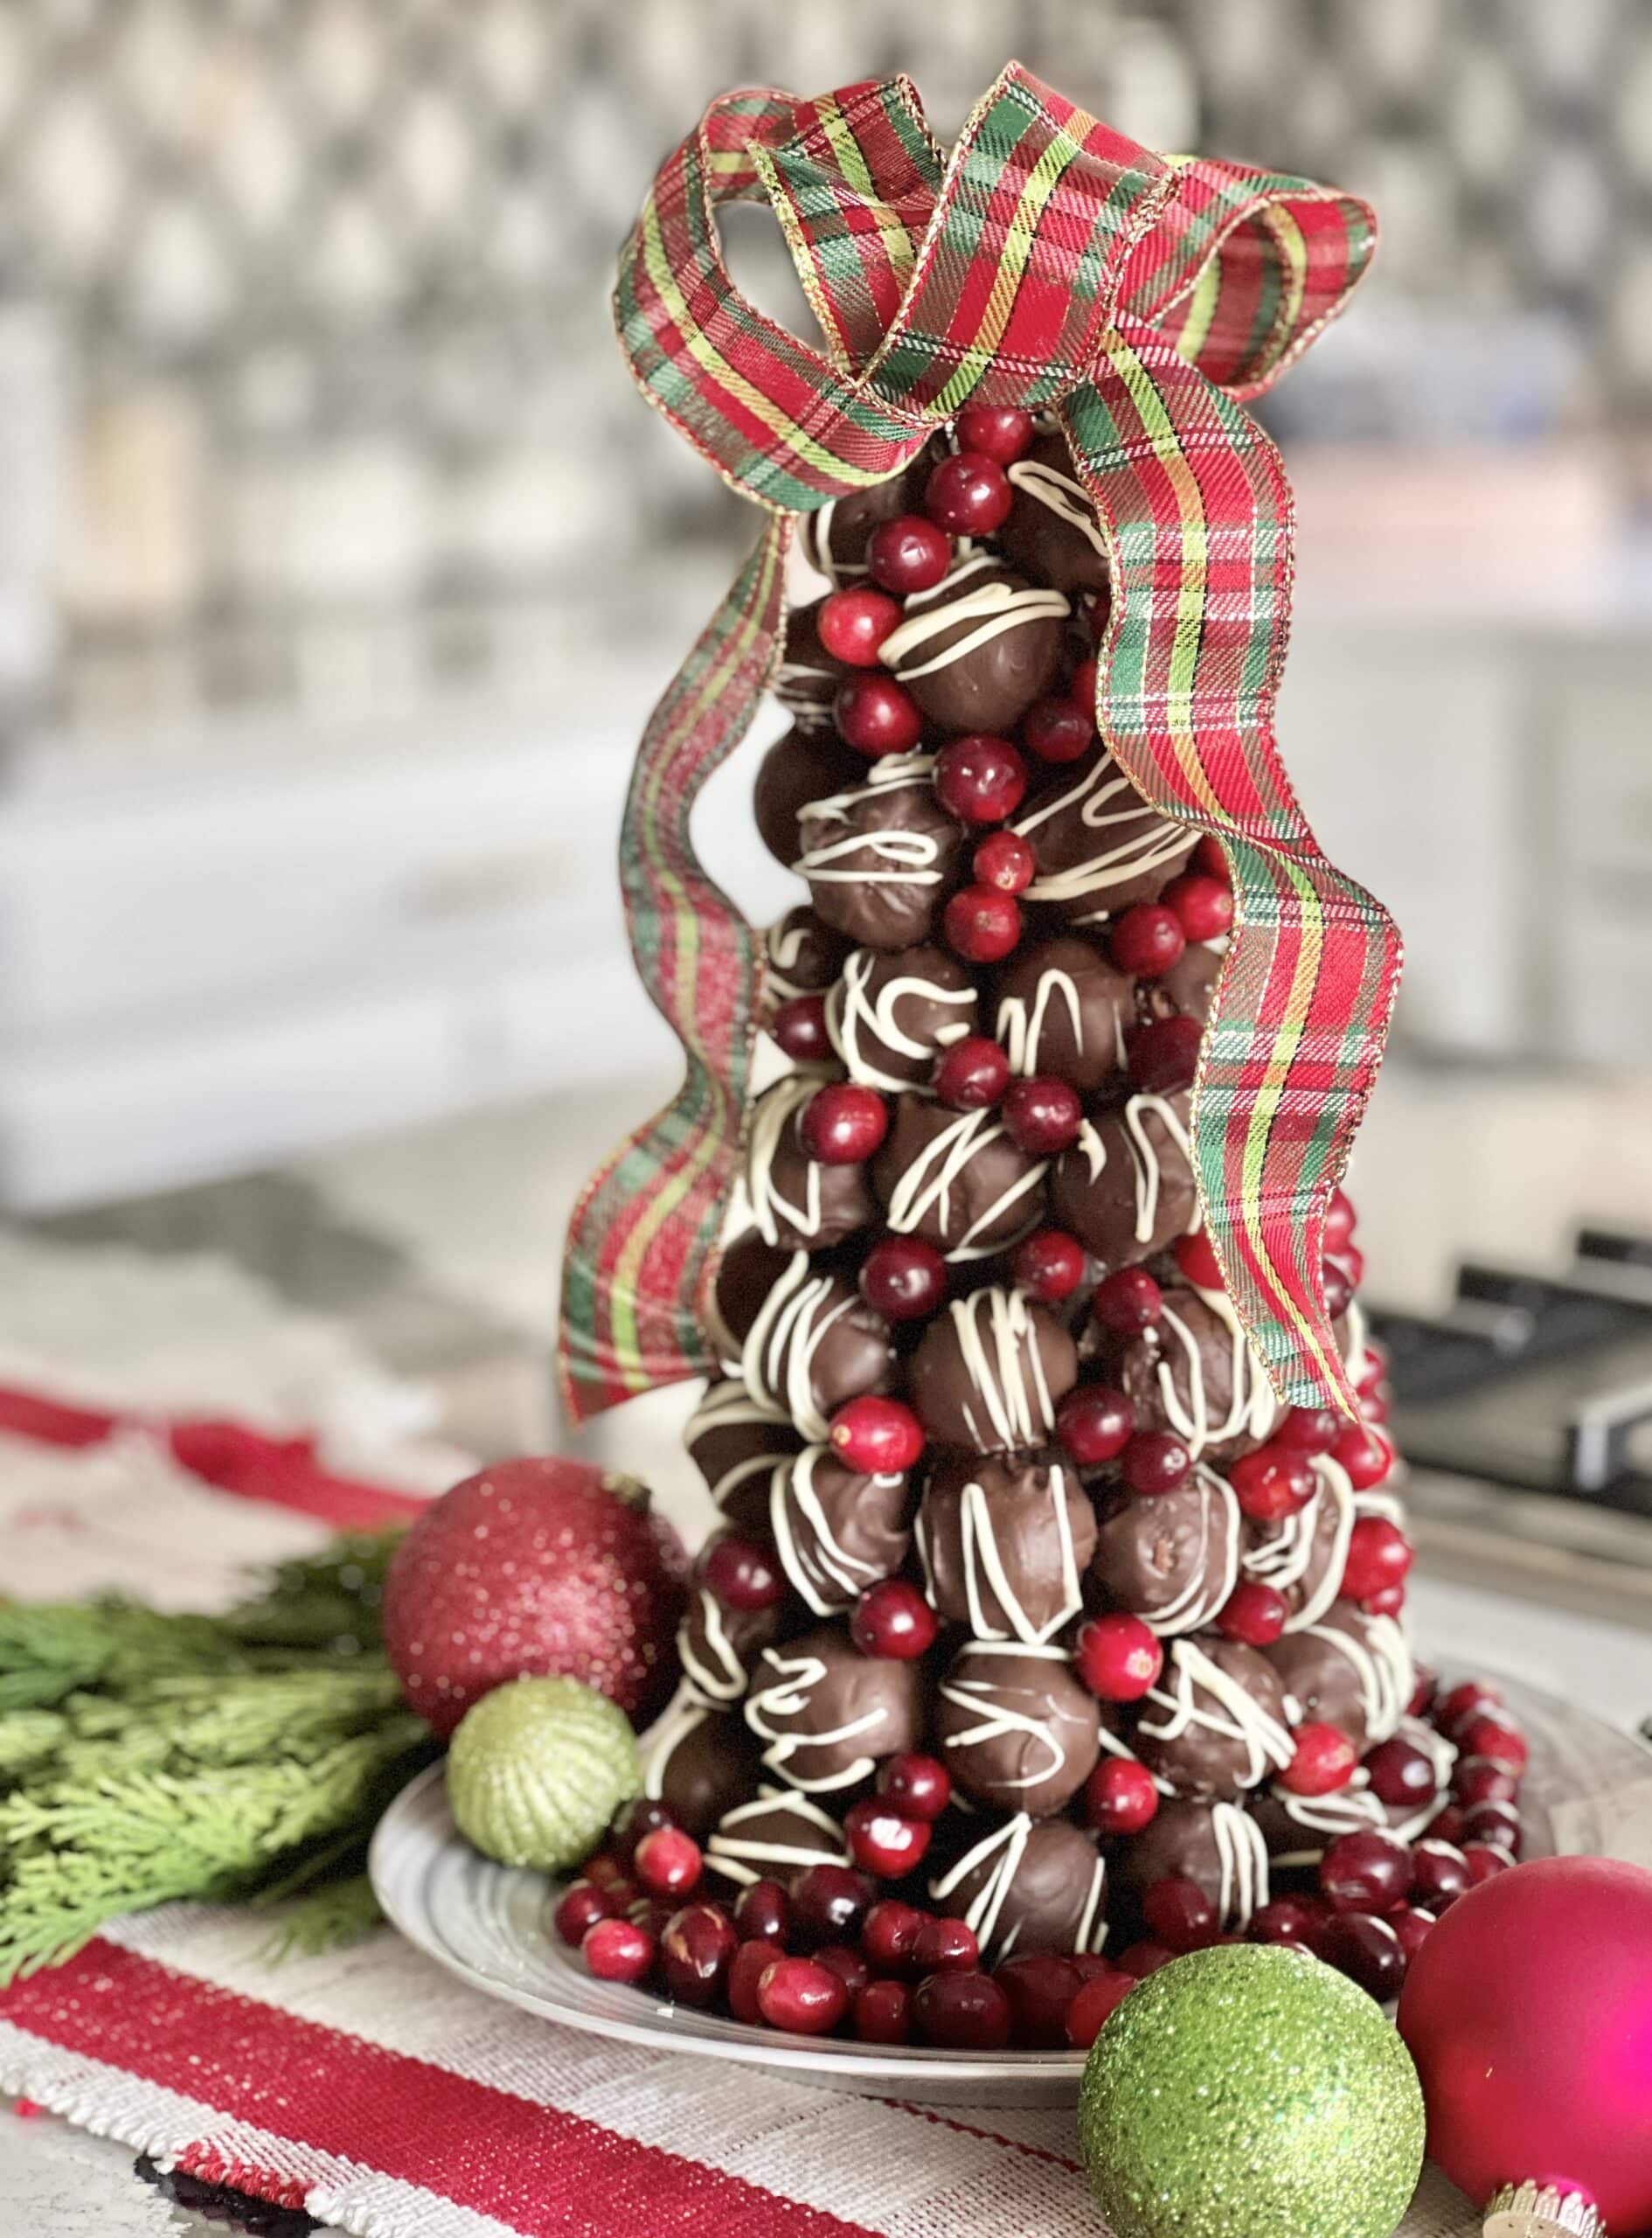 How to Make A Chocolate Truffle Christmas Tree